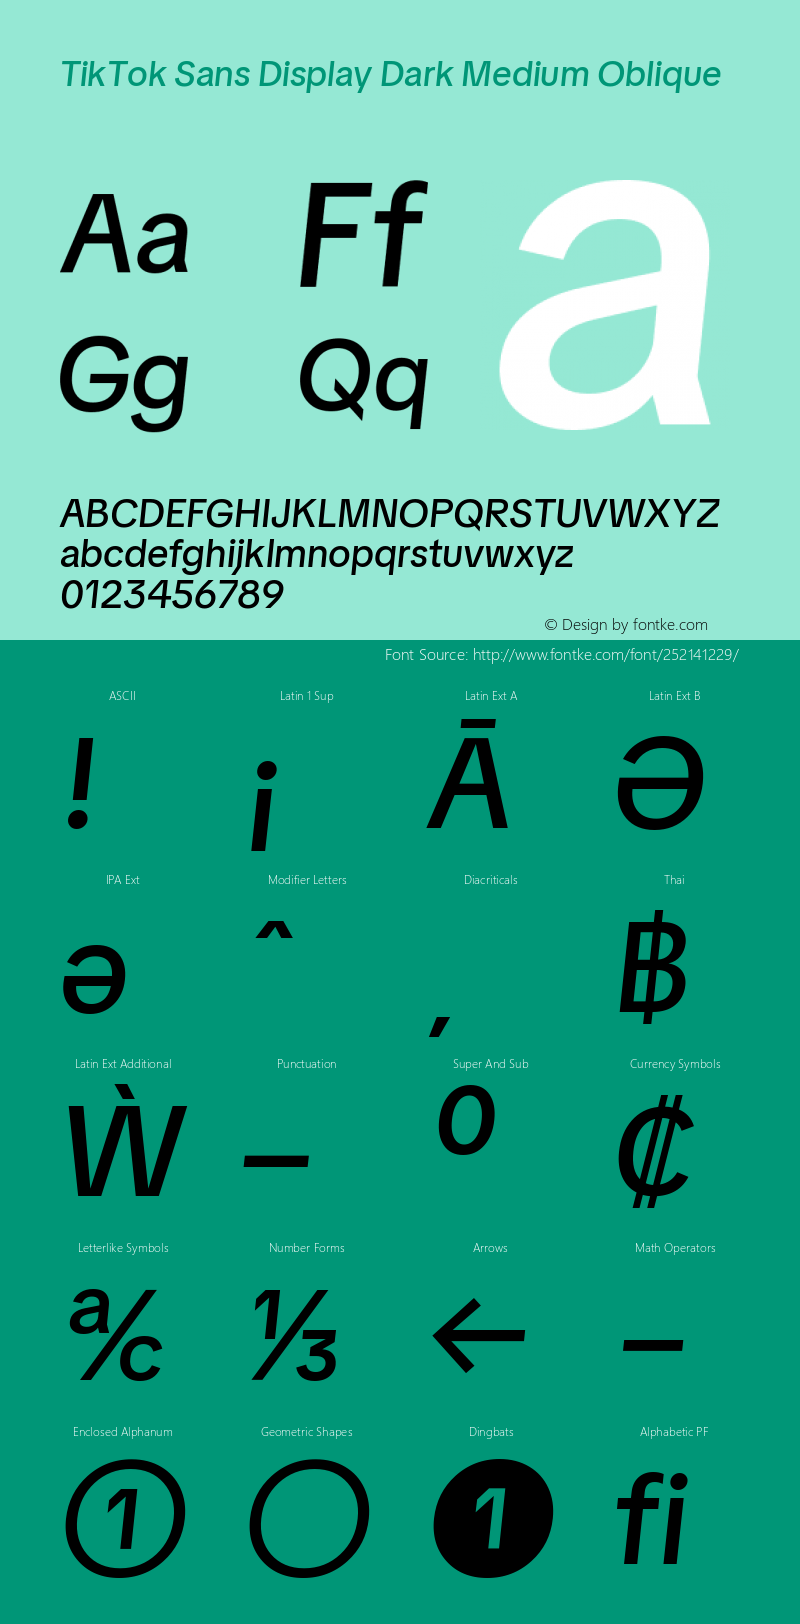 TikTok Sans Display Dark Medium Oblique Version 3.010;Glyphs 3.1.2 (3151)图片样张